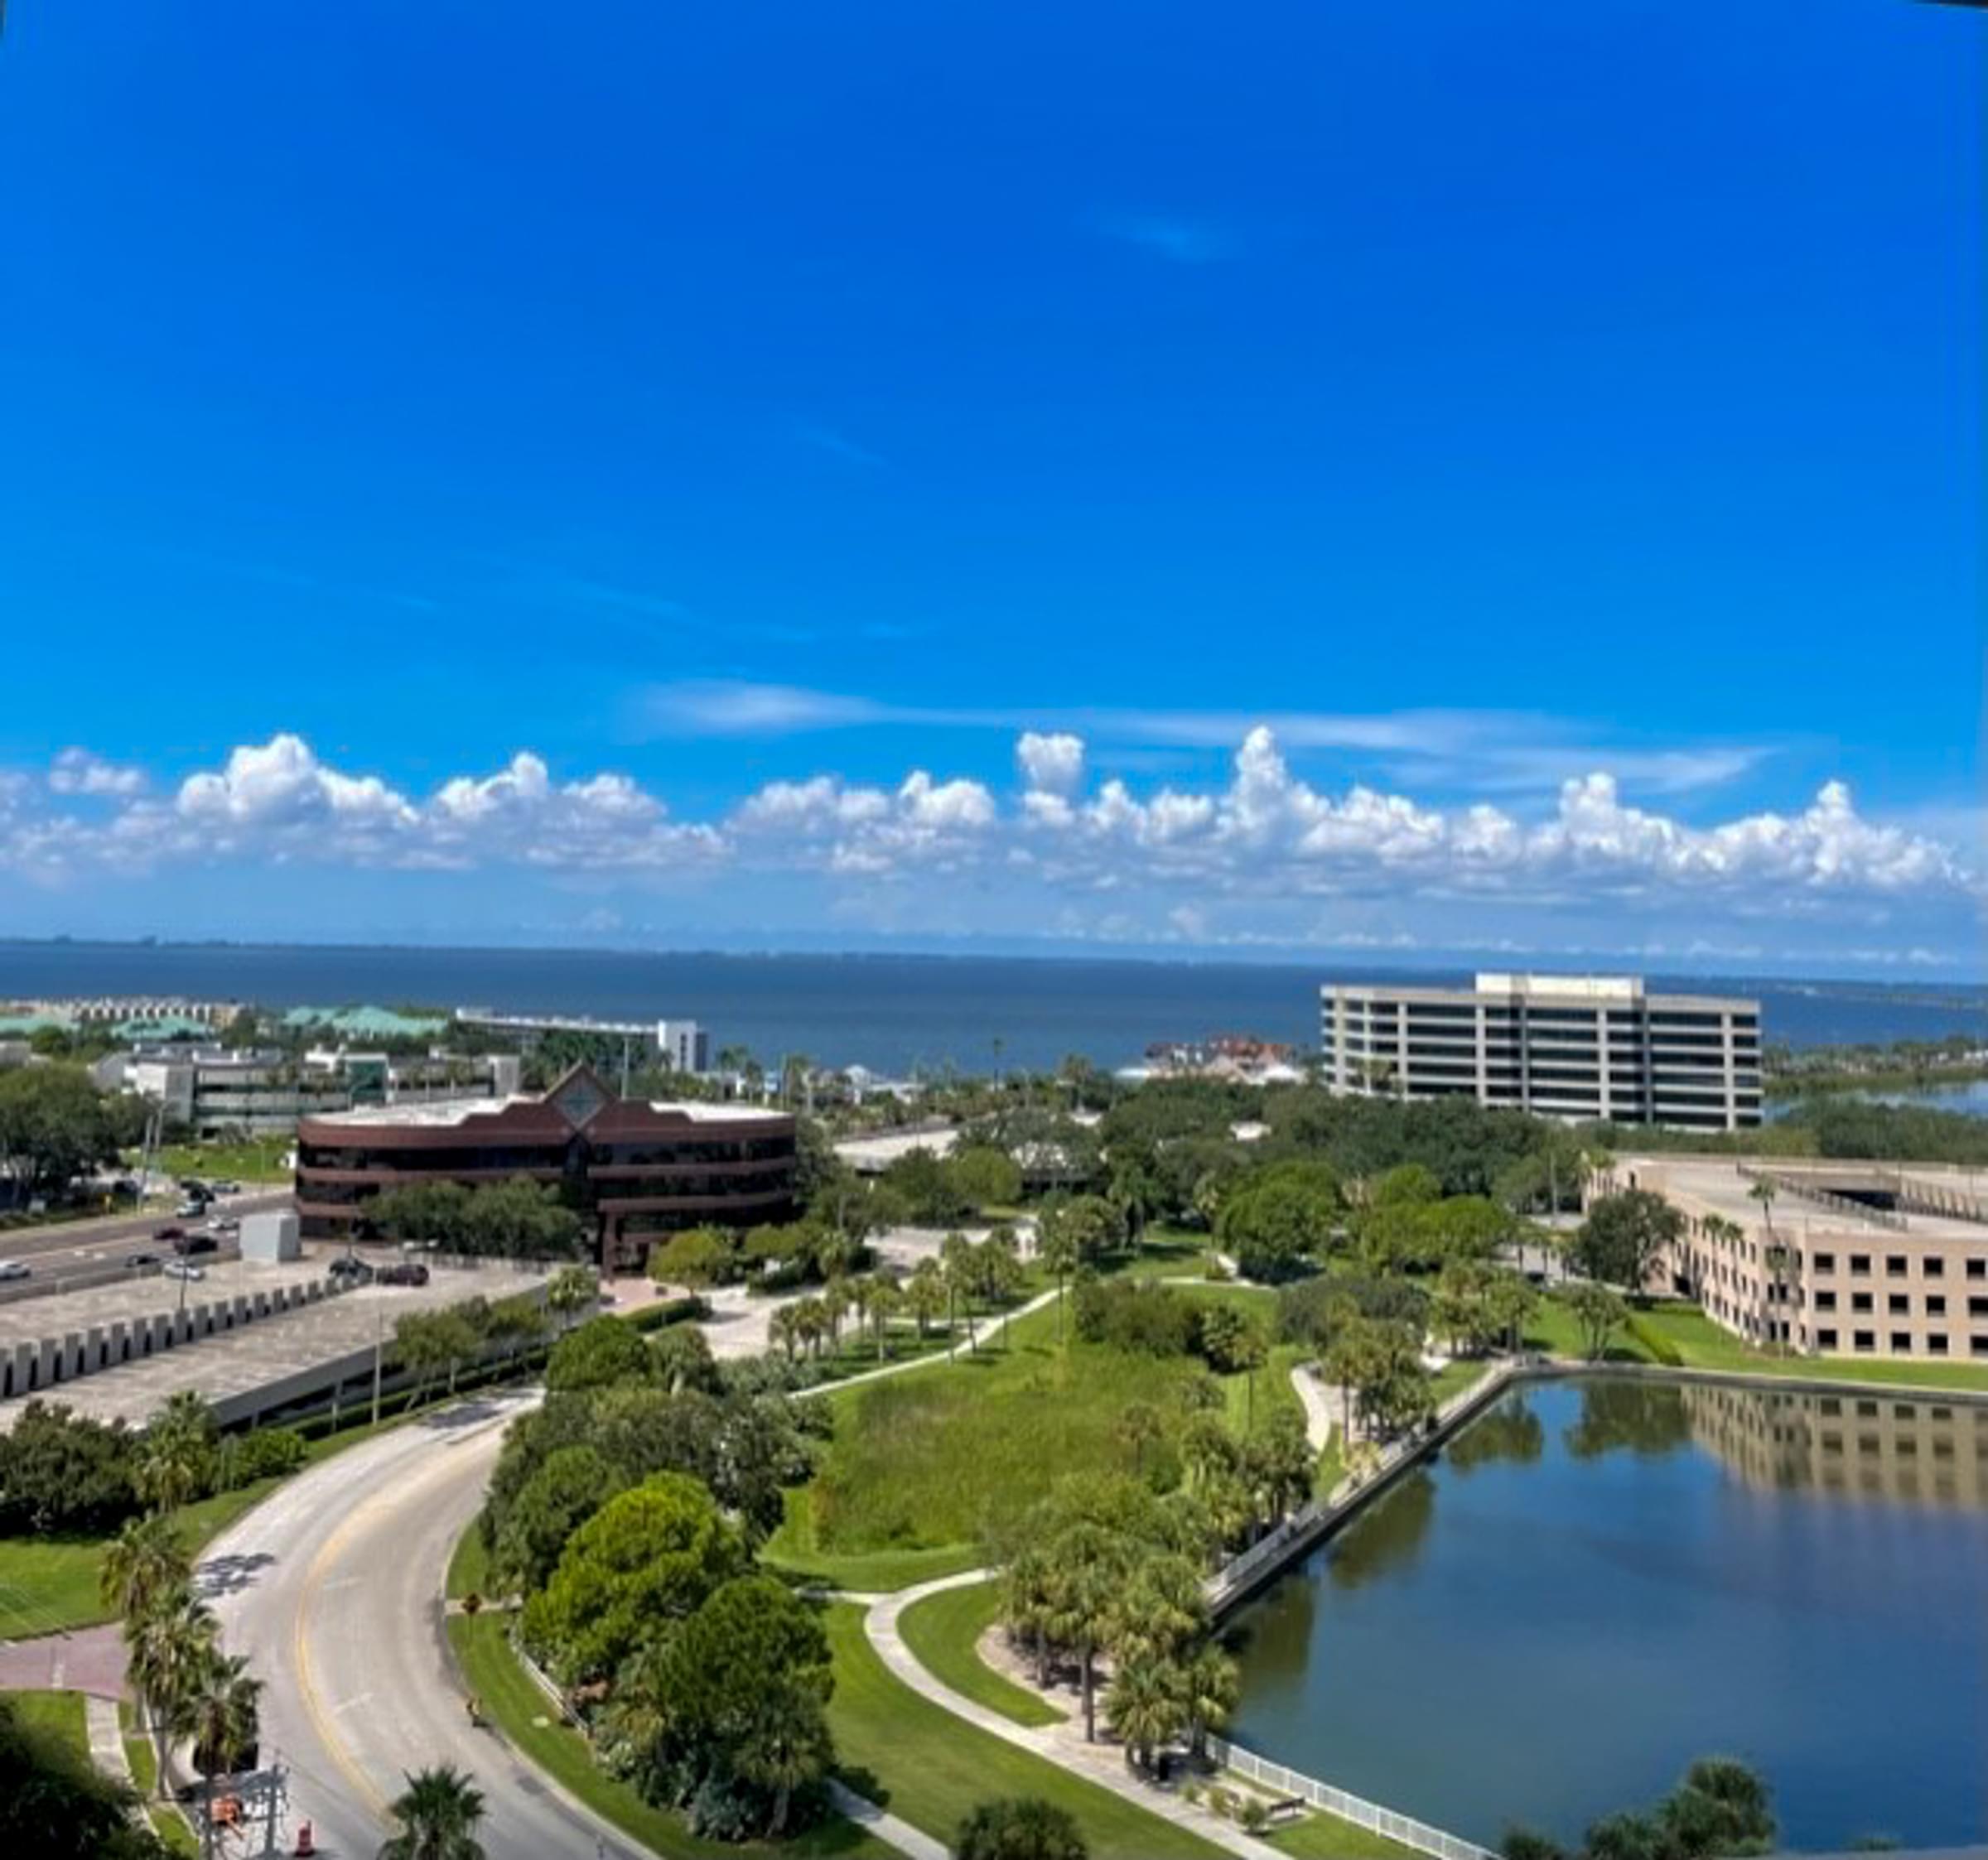 Tampa Bay views